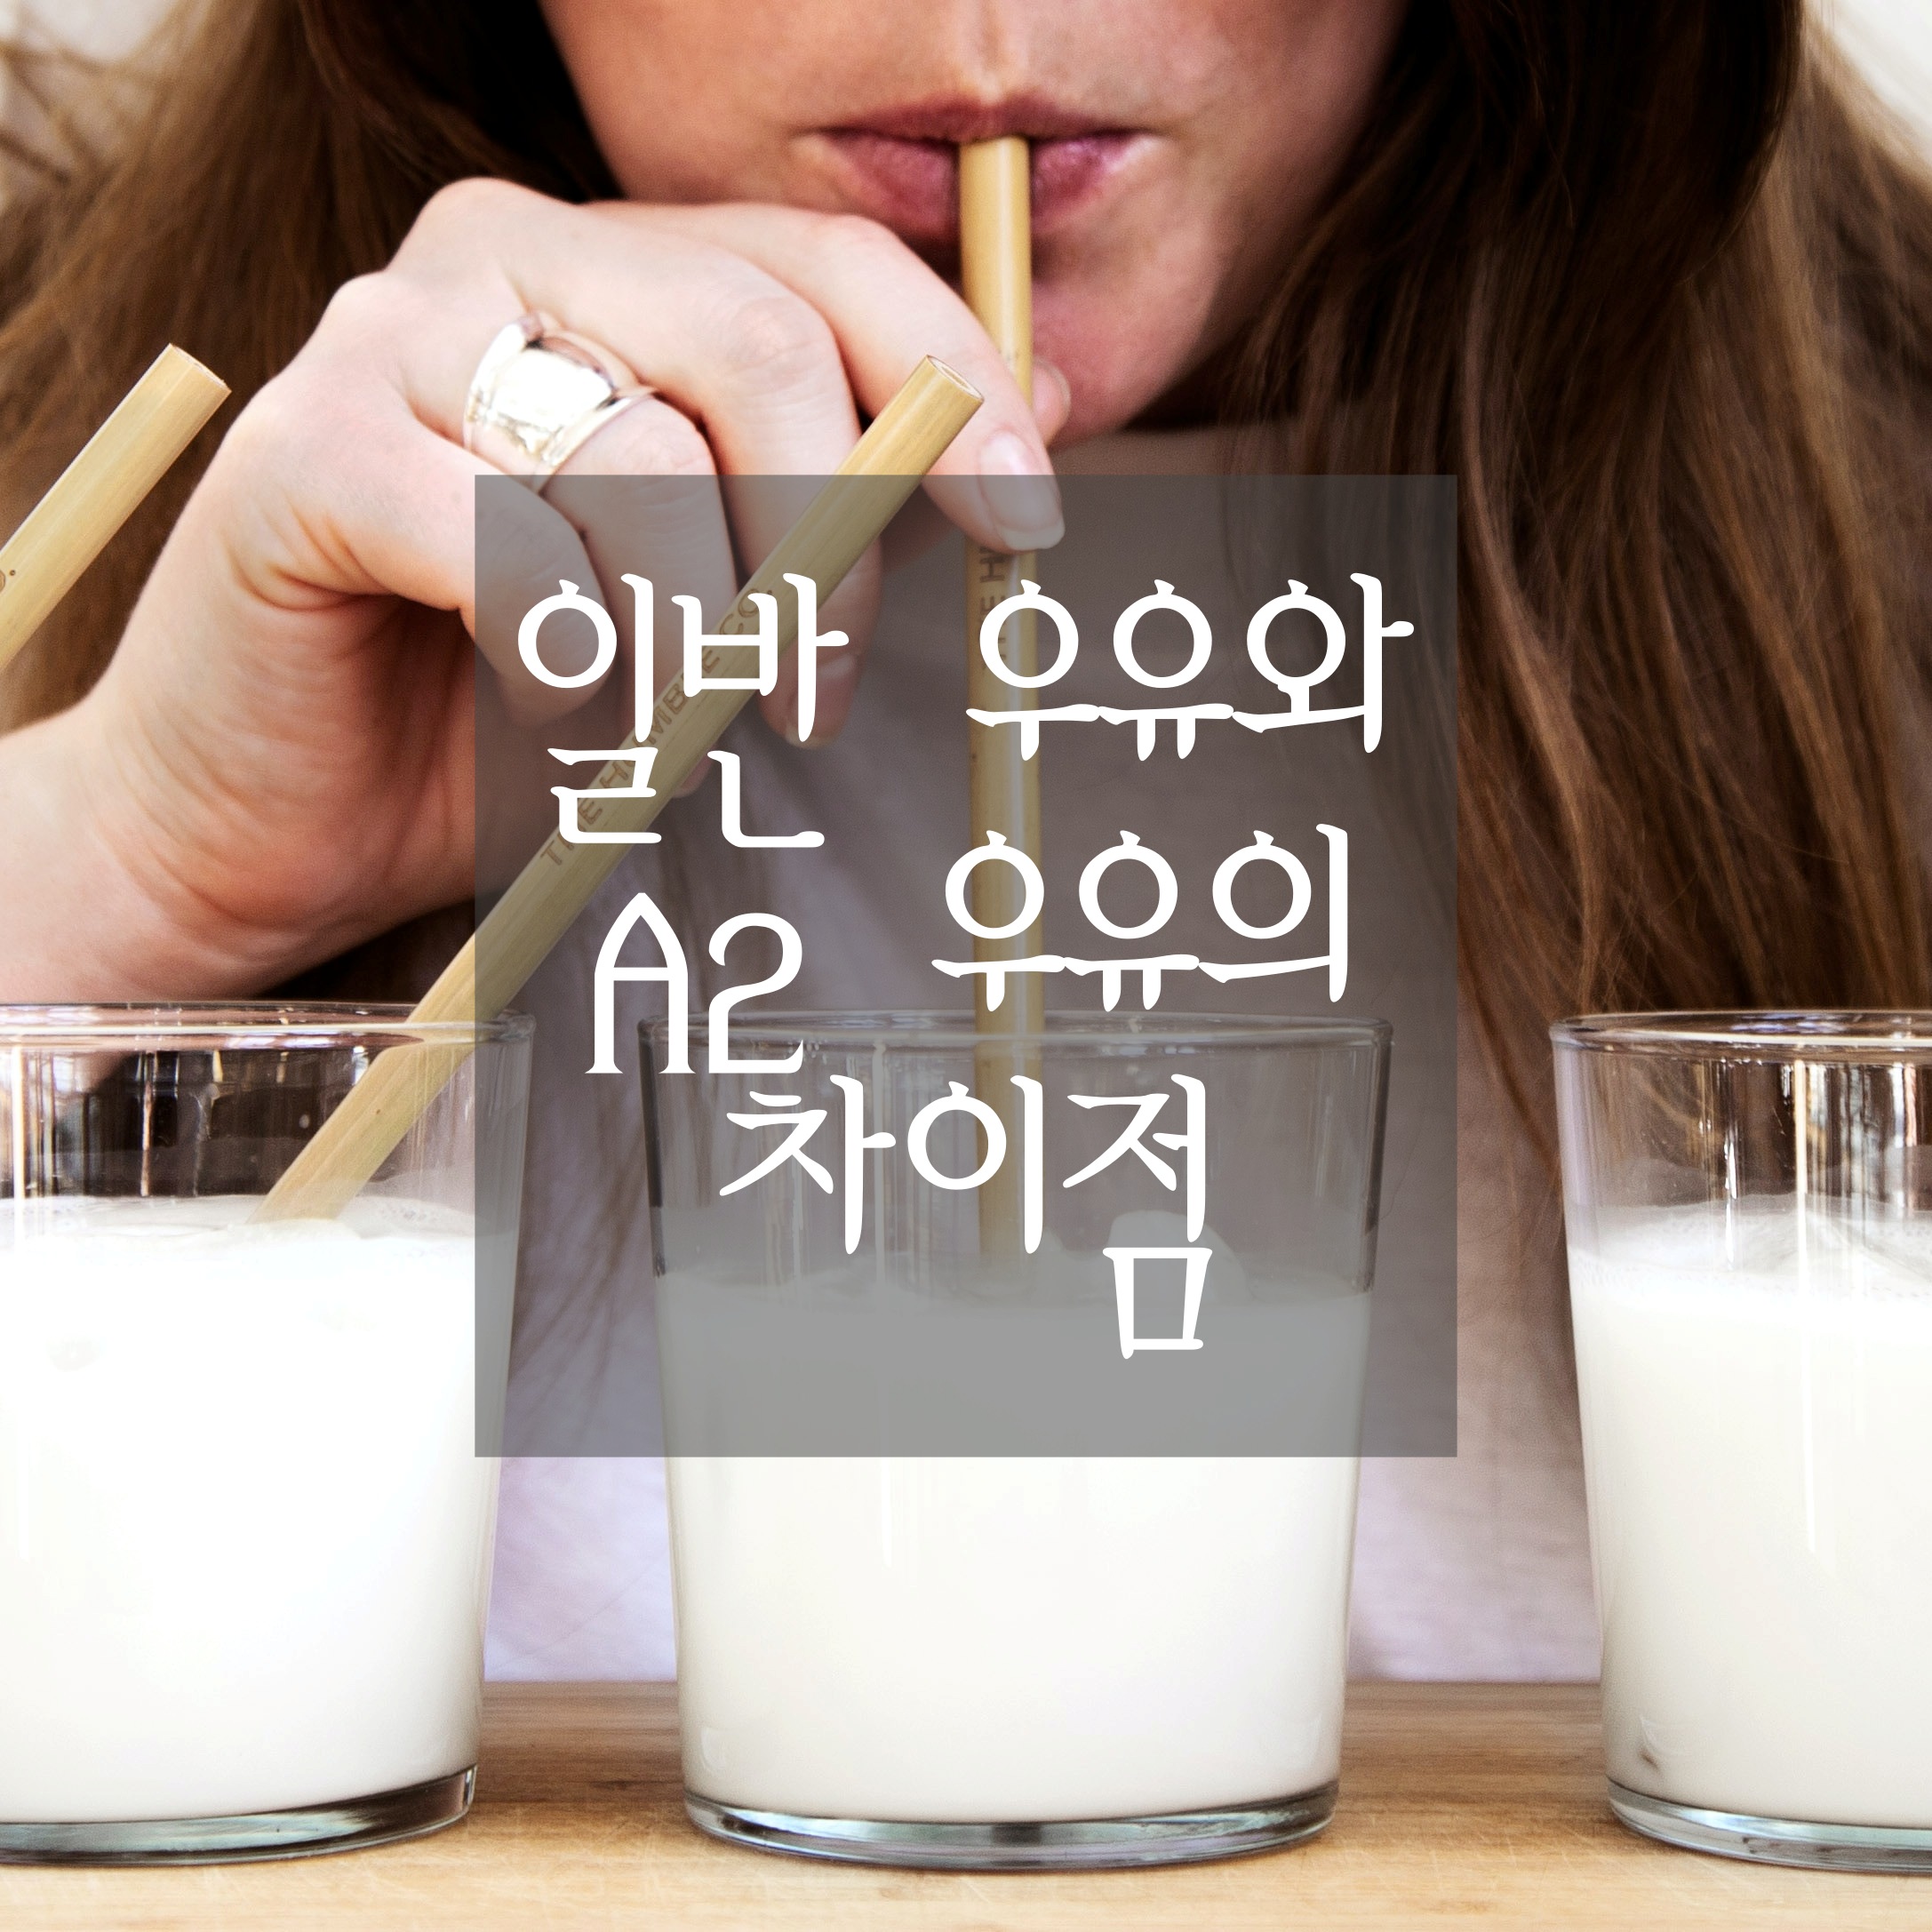 일반 우유와 A2 우유의 차이점